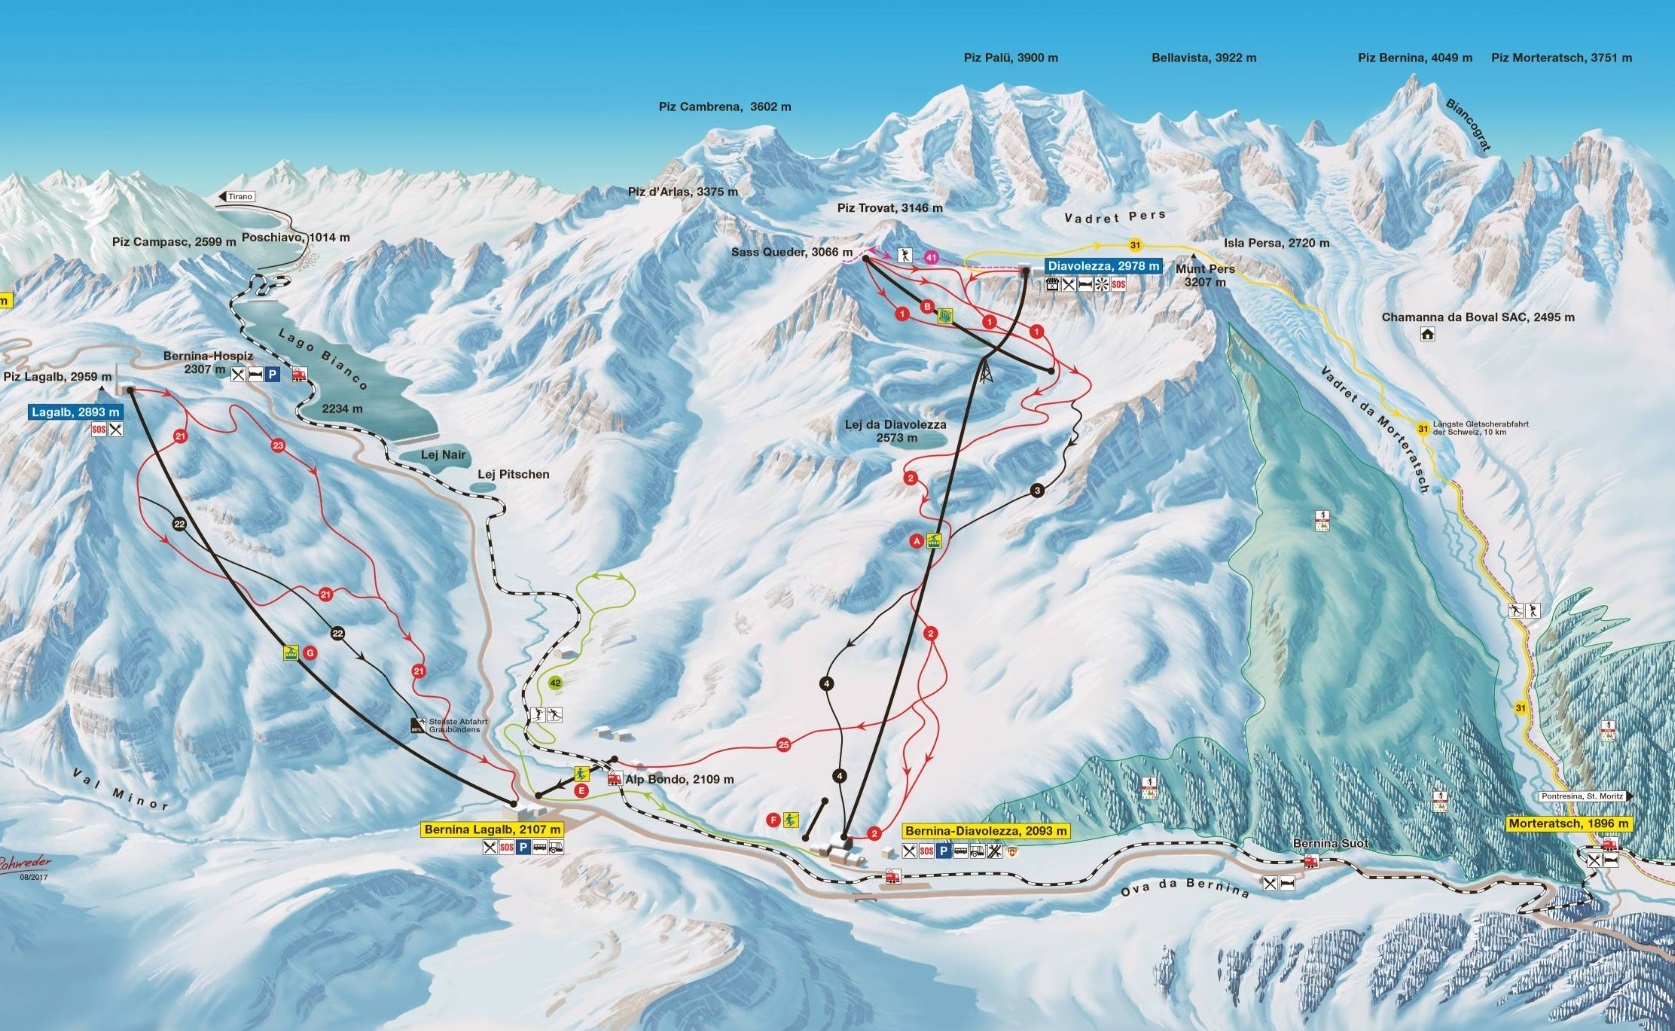 St Moritz Ski Resort Info Guide | St Moritz Engadin Switzerland Review